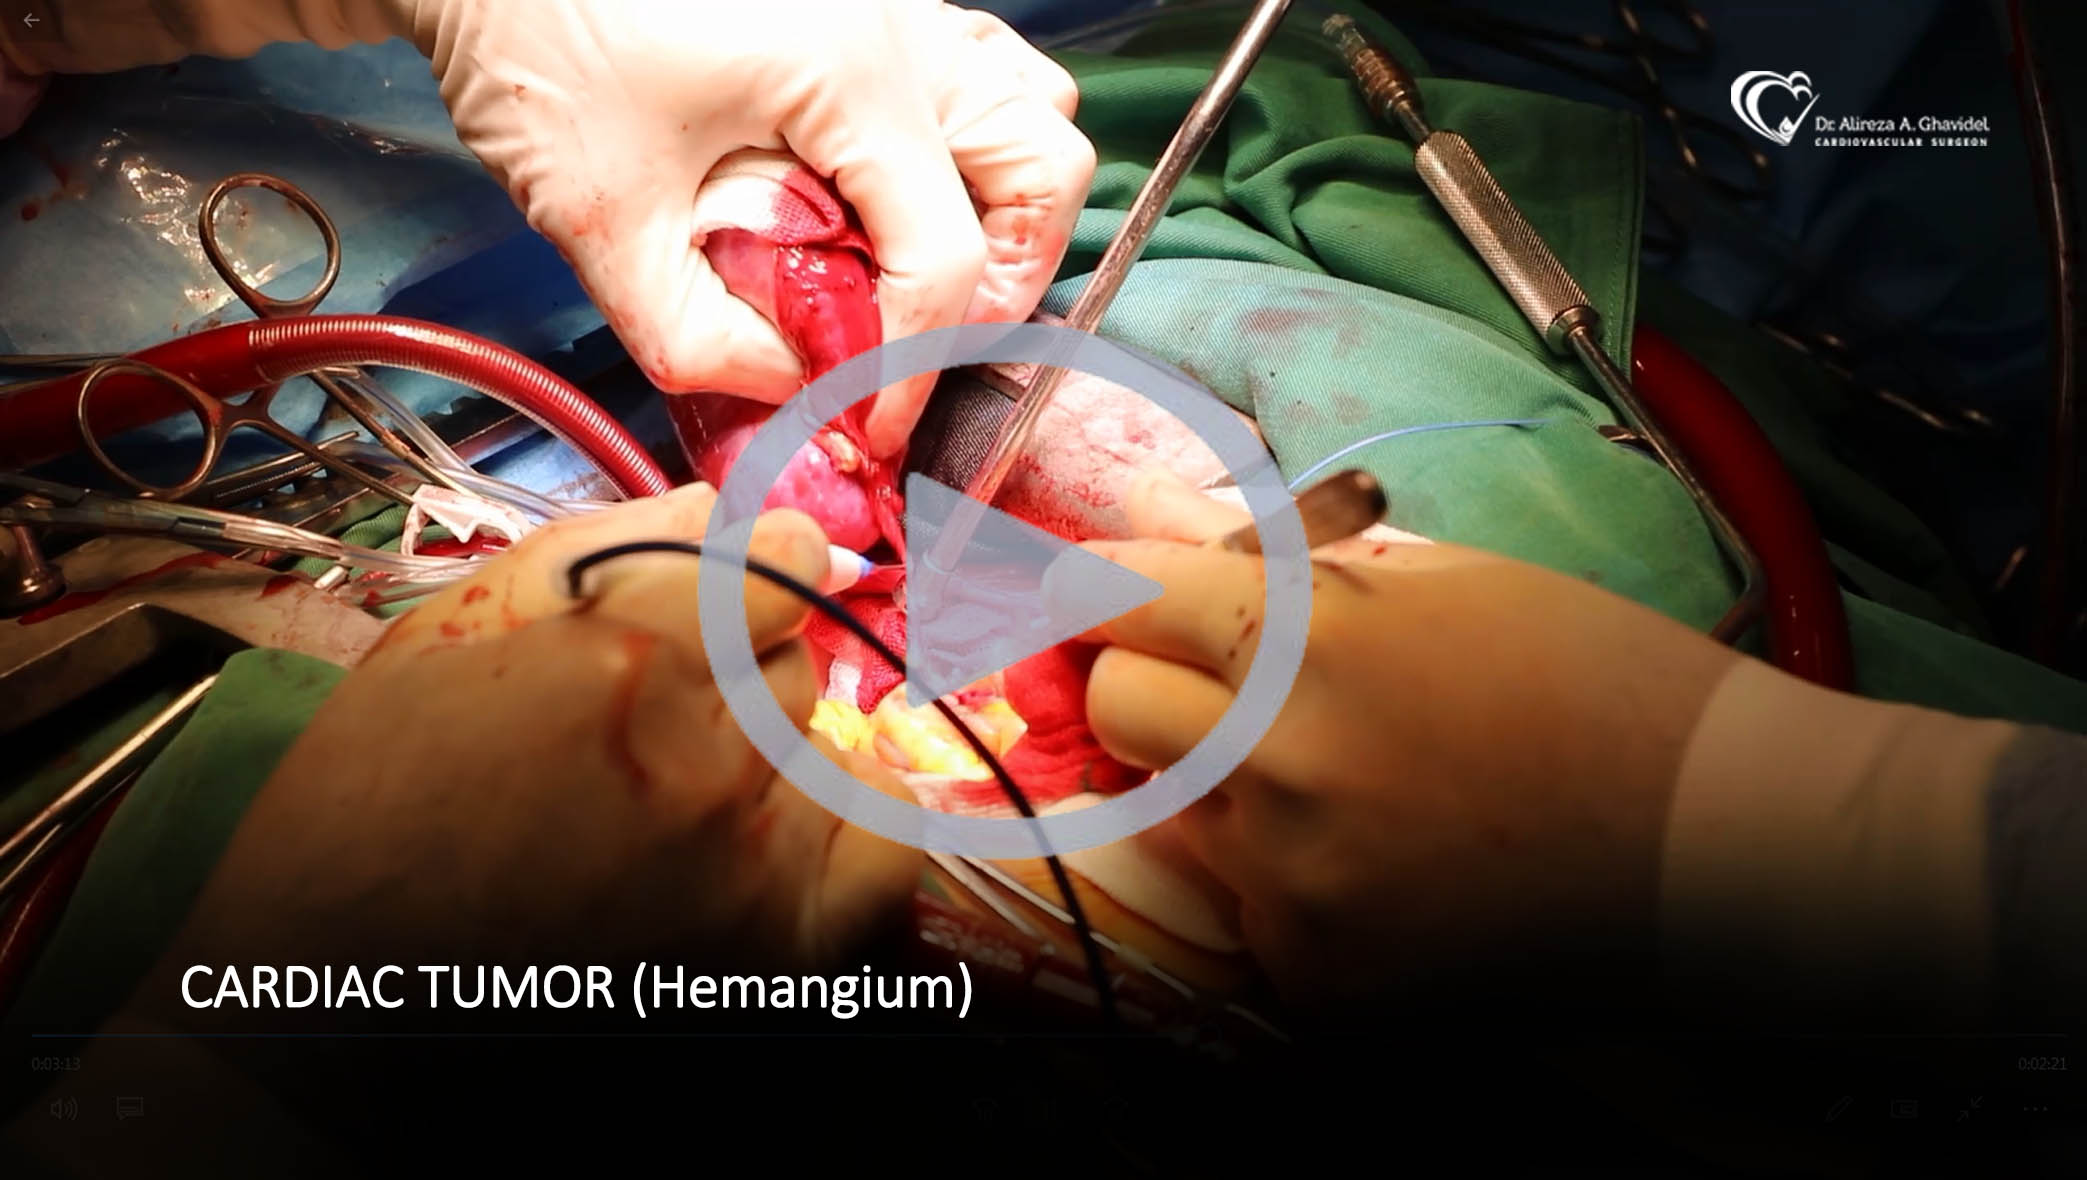 Cardiac Tumor (Hemangium)